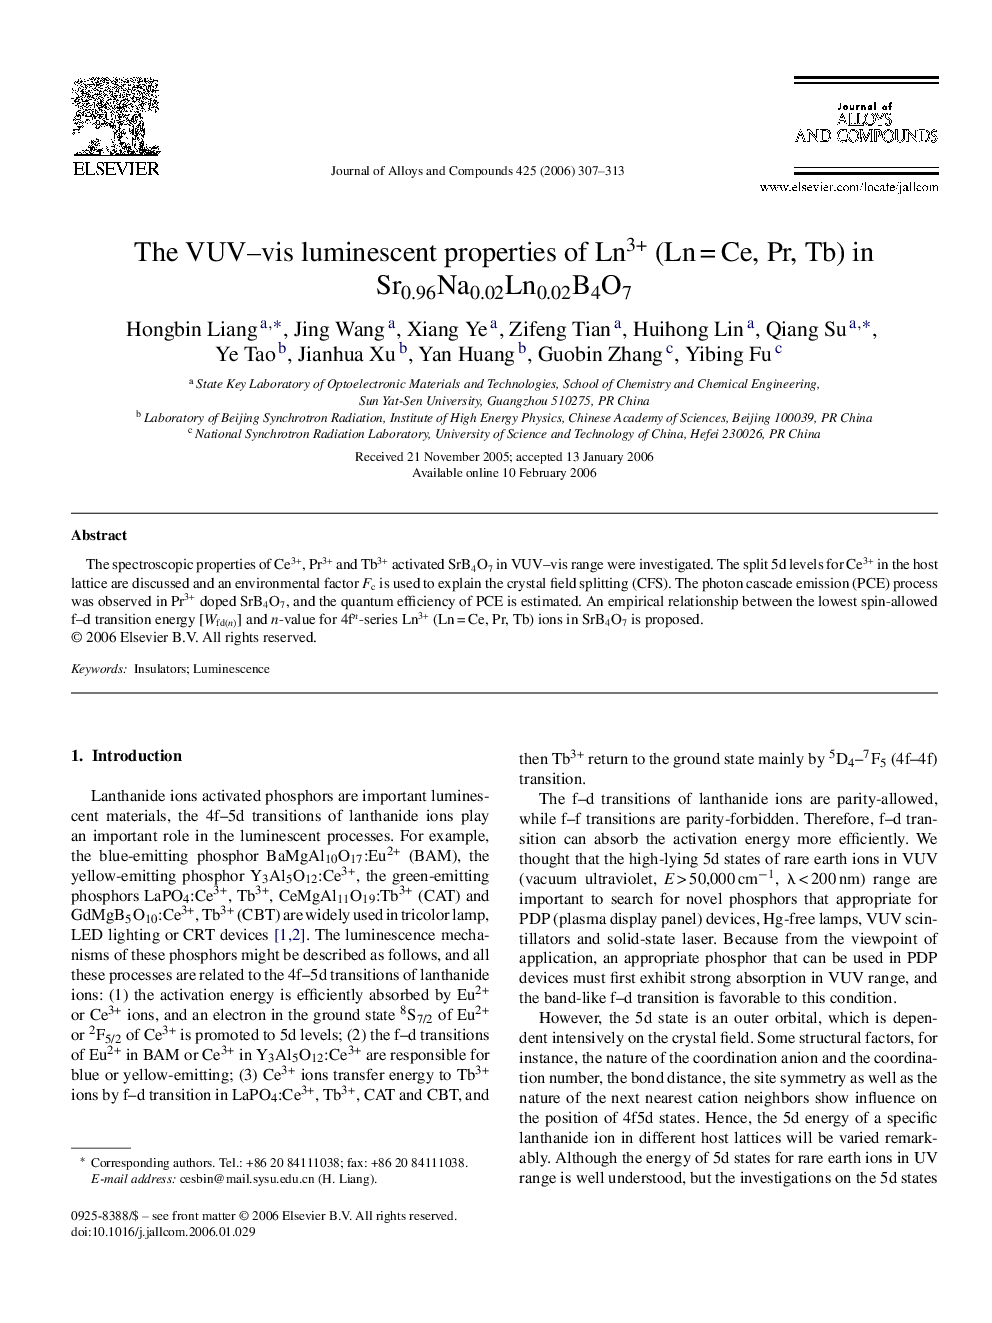 The VUV–vis luminescent properties of Ln3+ (Ln = Ce, Pr, Tb) in Sr0.96Na0.02Ln0.02B4O7